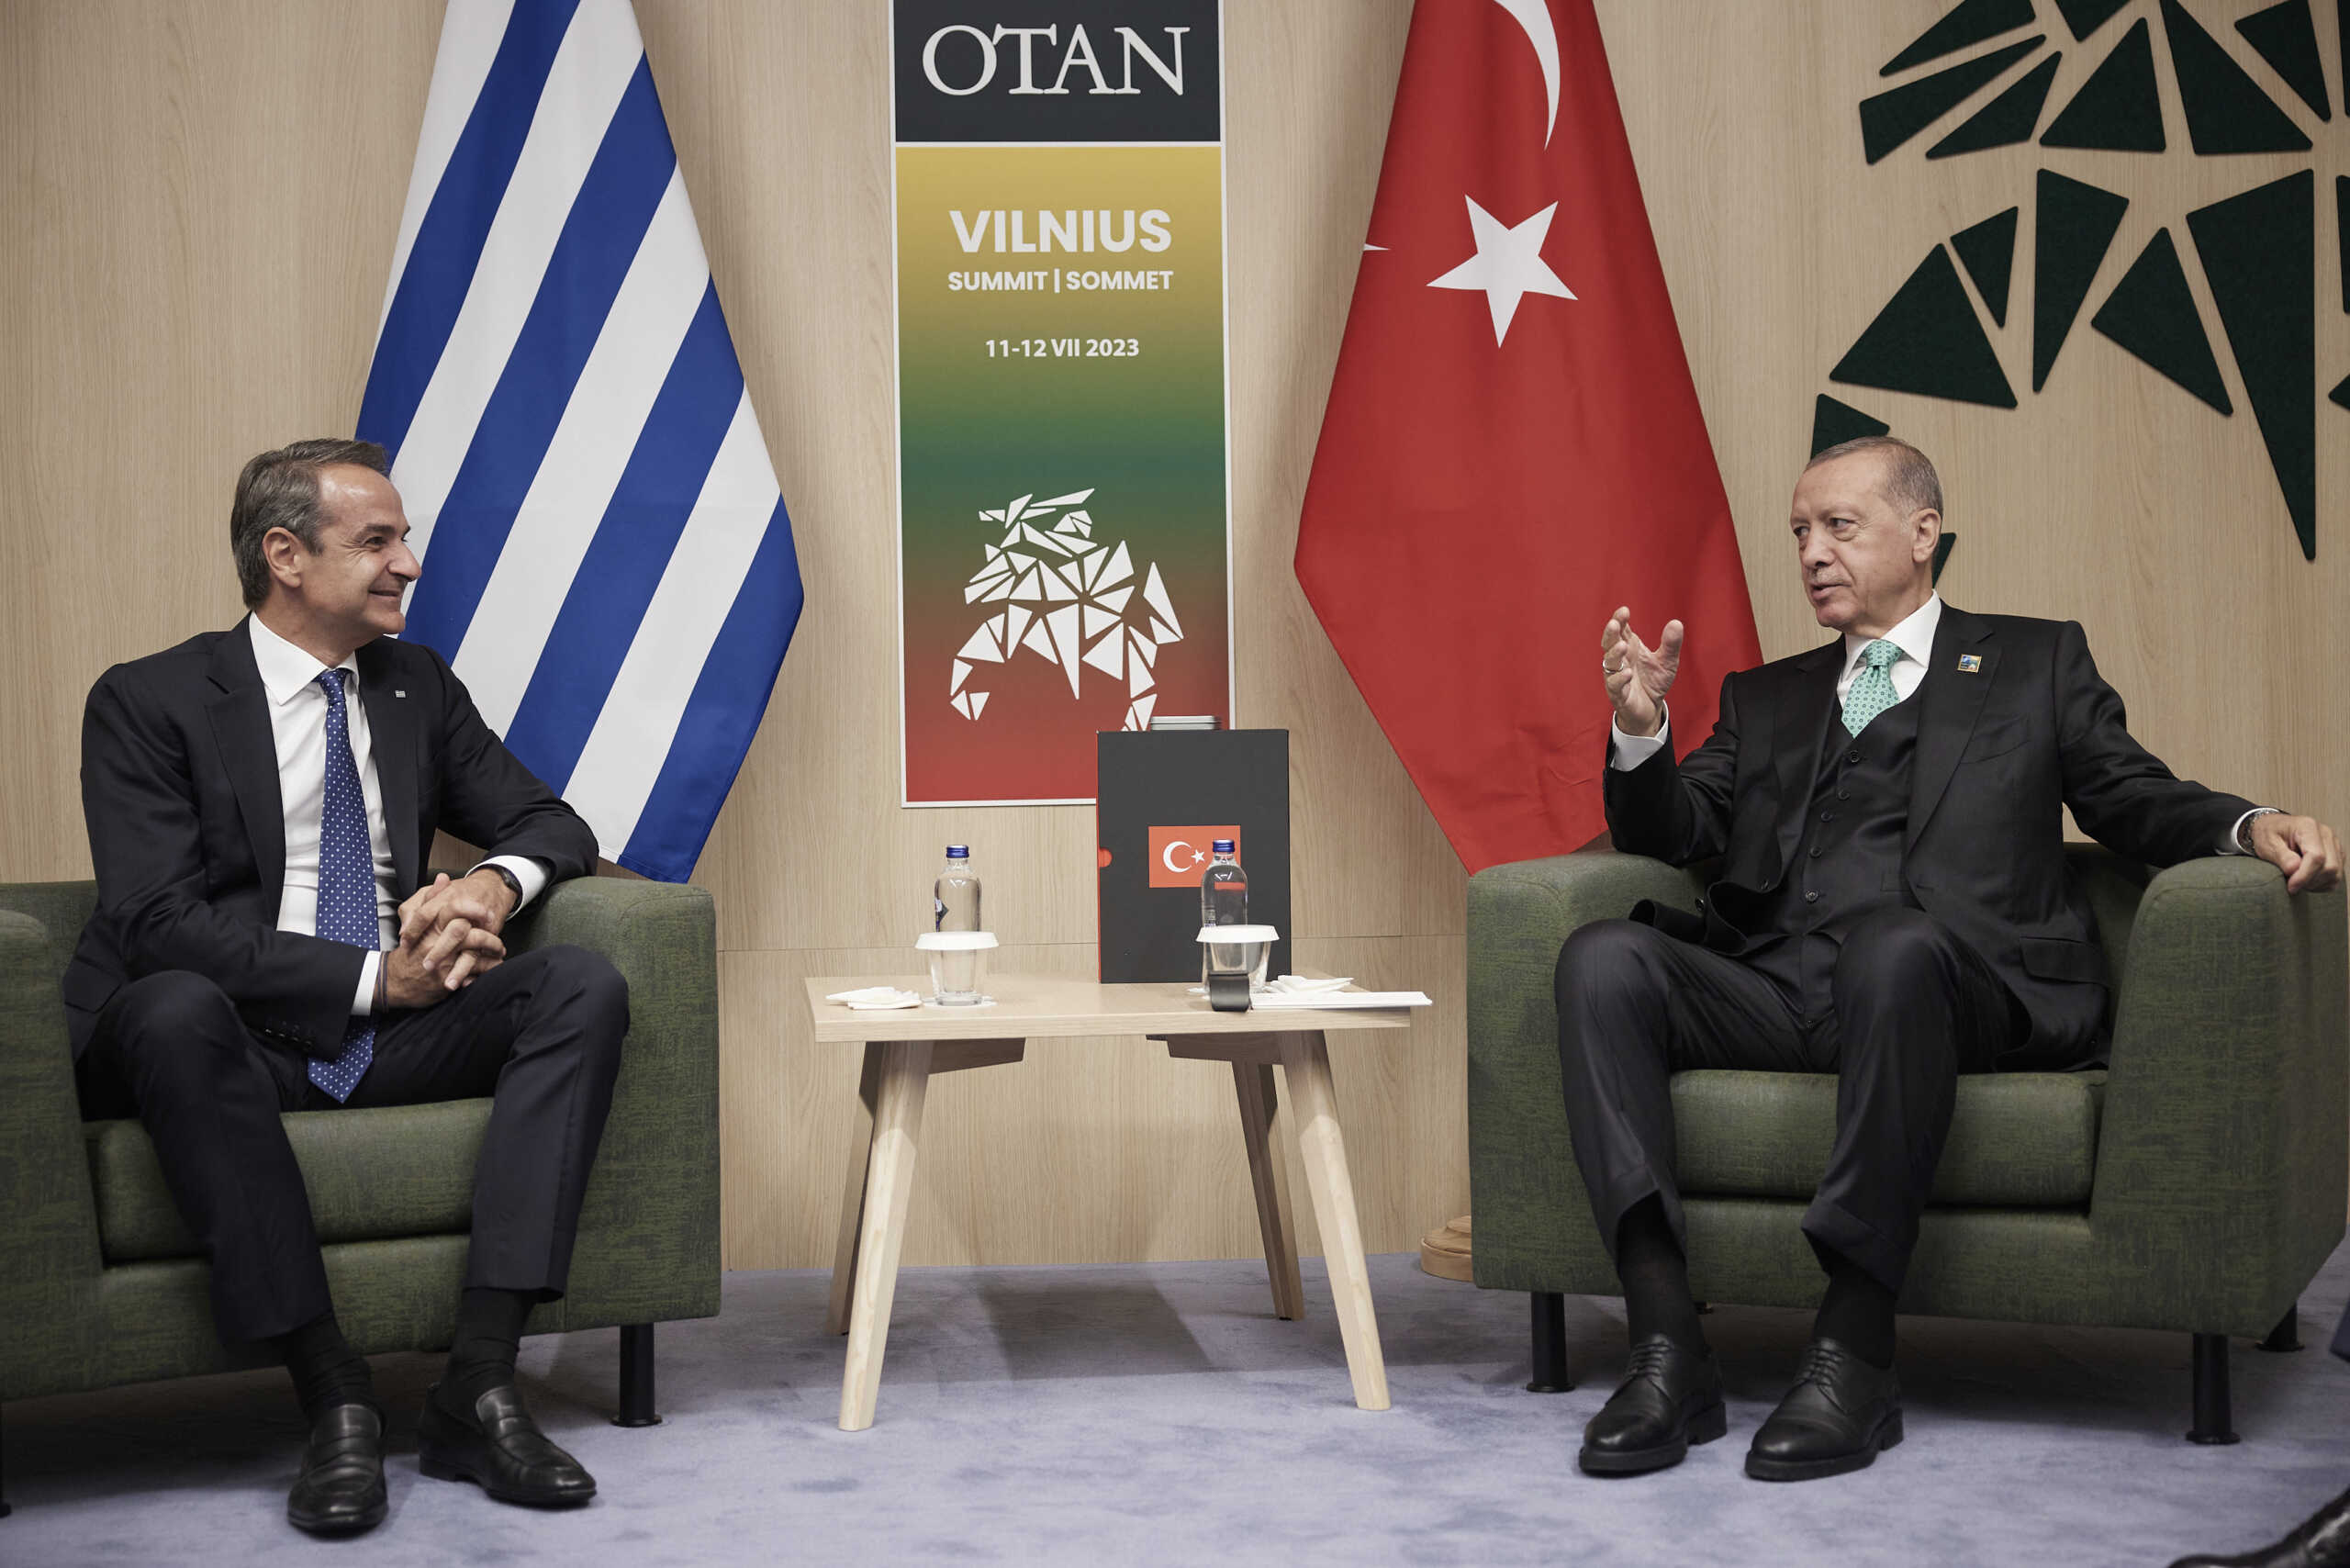 Συνάντηση Μητσοτάκη – Ερντογάν: «Συμφώνησαν να ενεργοποιήσουν πολλαπλούς διαύλους επικοινωνίας» λέει η Τουρκία